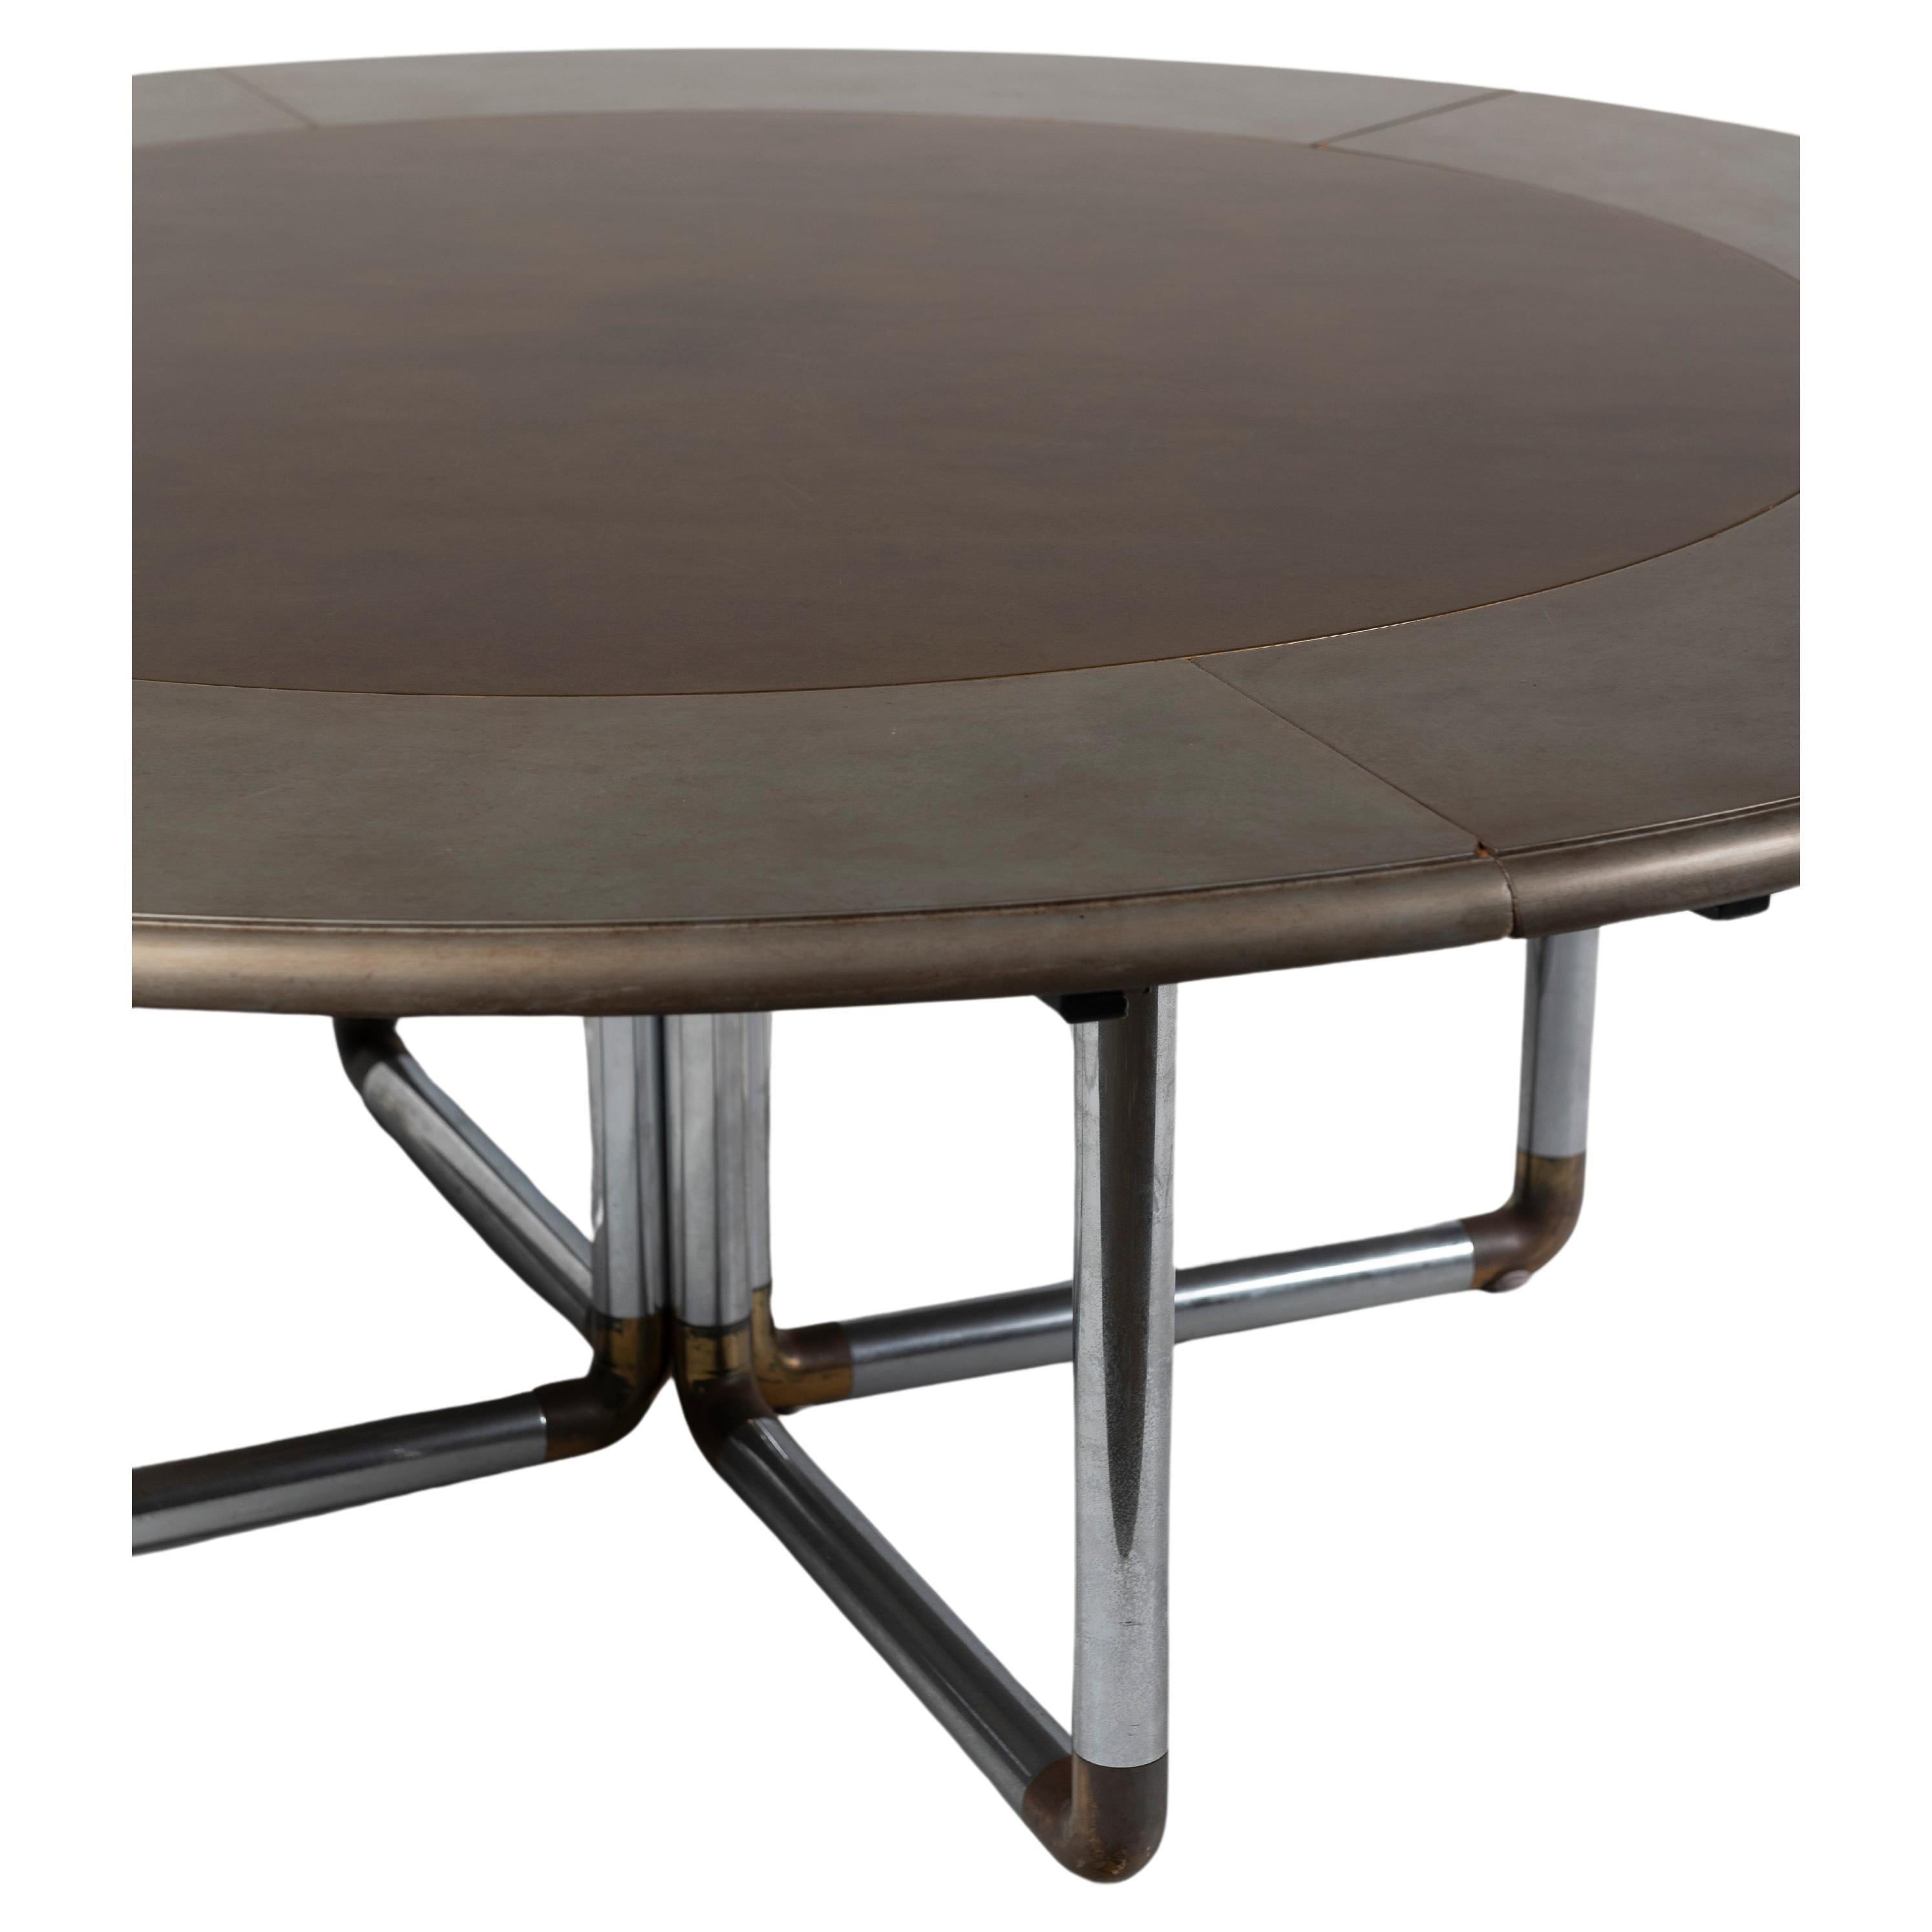 Table de salle à manger ronde super moderne avec plateau en bois peint et tube chromé.  avec base détaillée en laiton, mesure 84